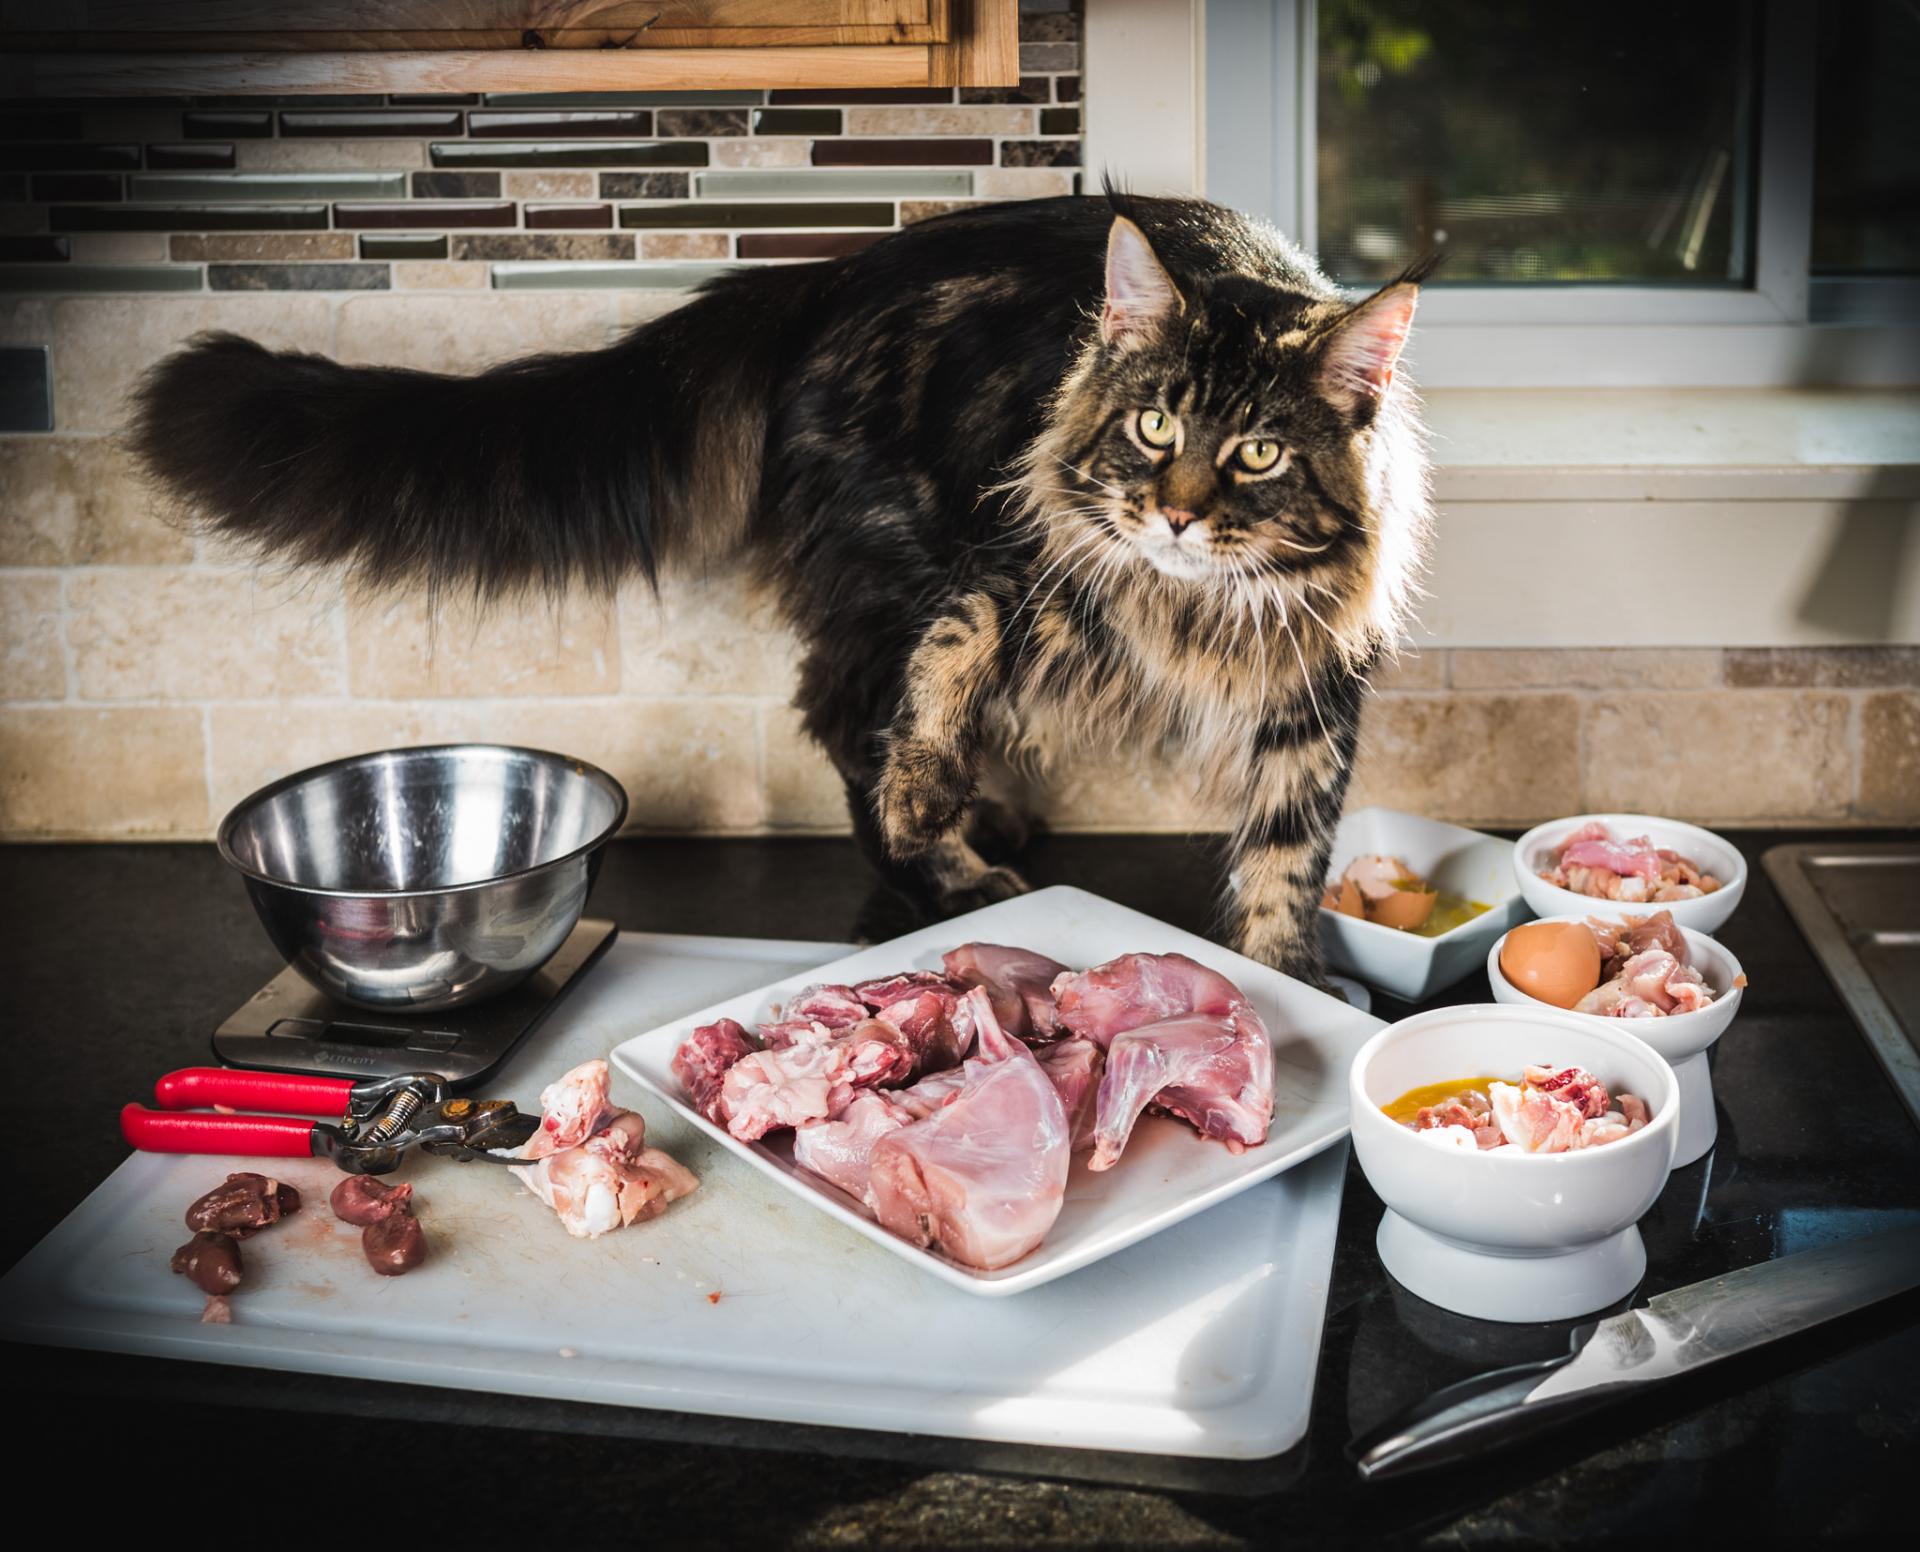 7 продуктов, которыми нельзя кормить собак и кошек